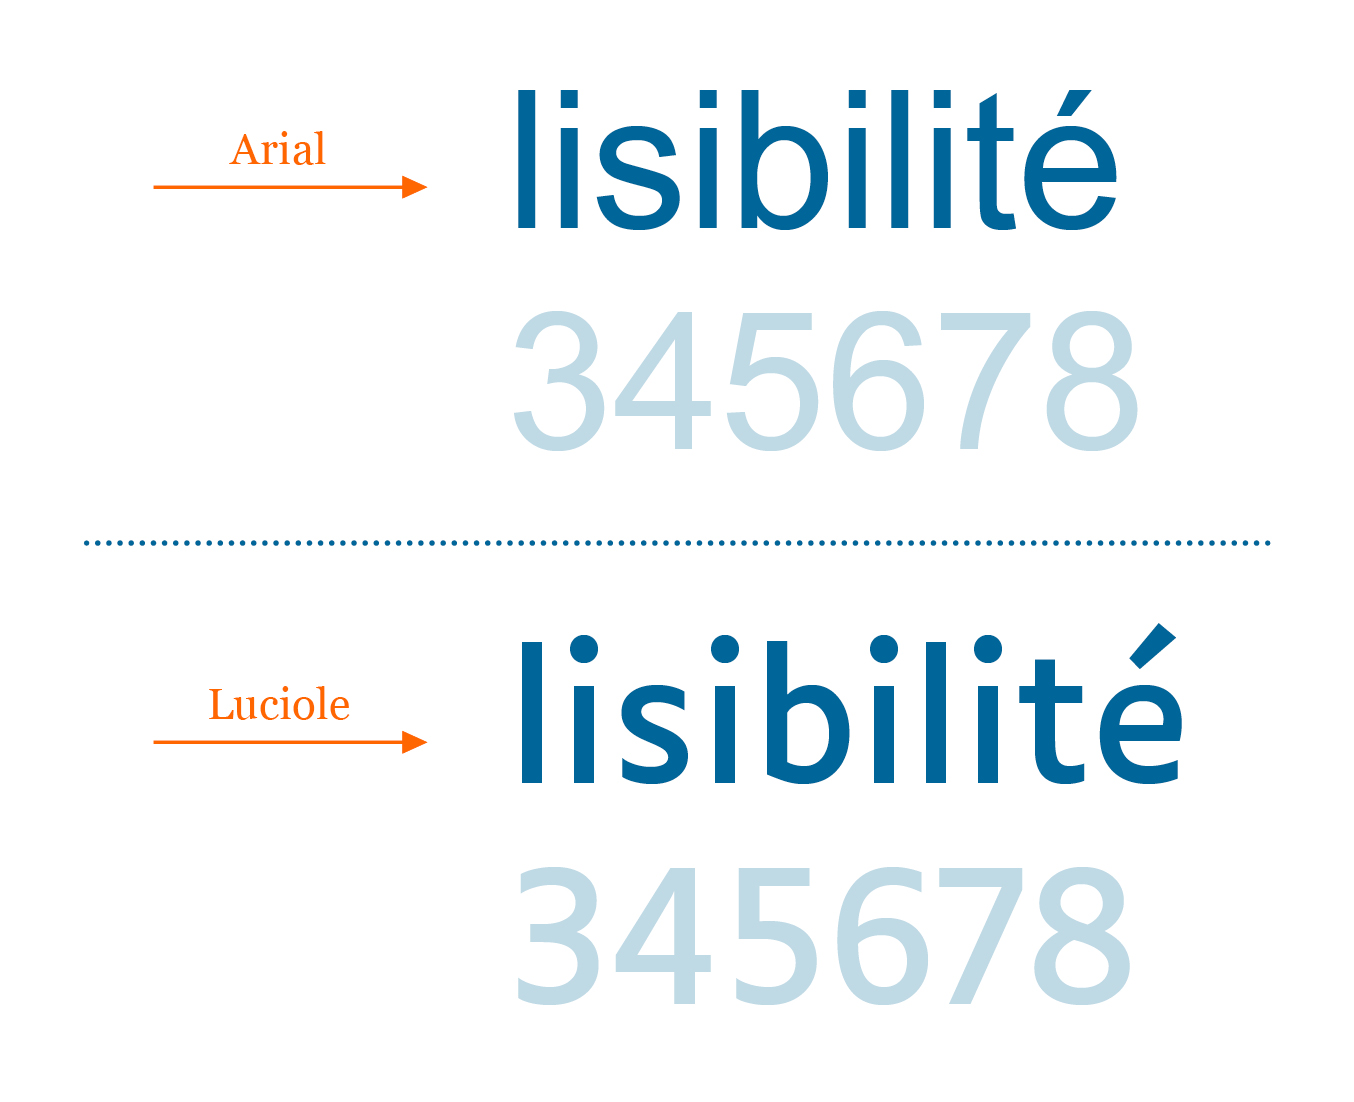 Comparaison du mot « lisibilité » entre l'Arial et le Luciole.